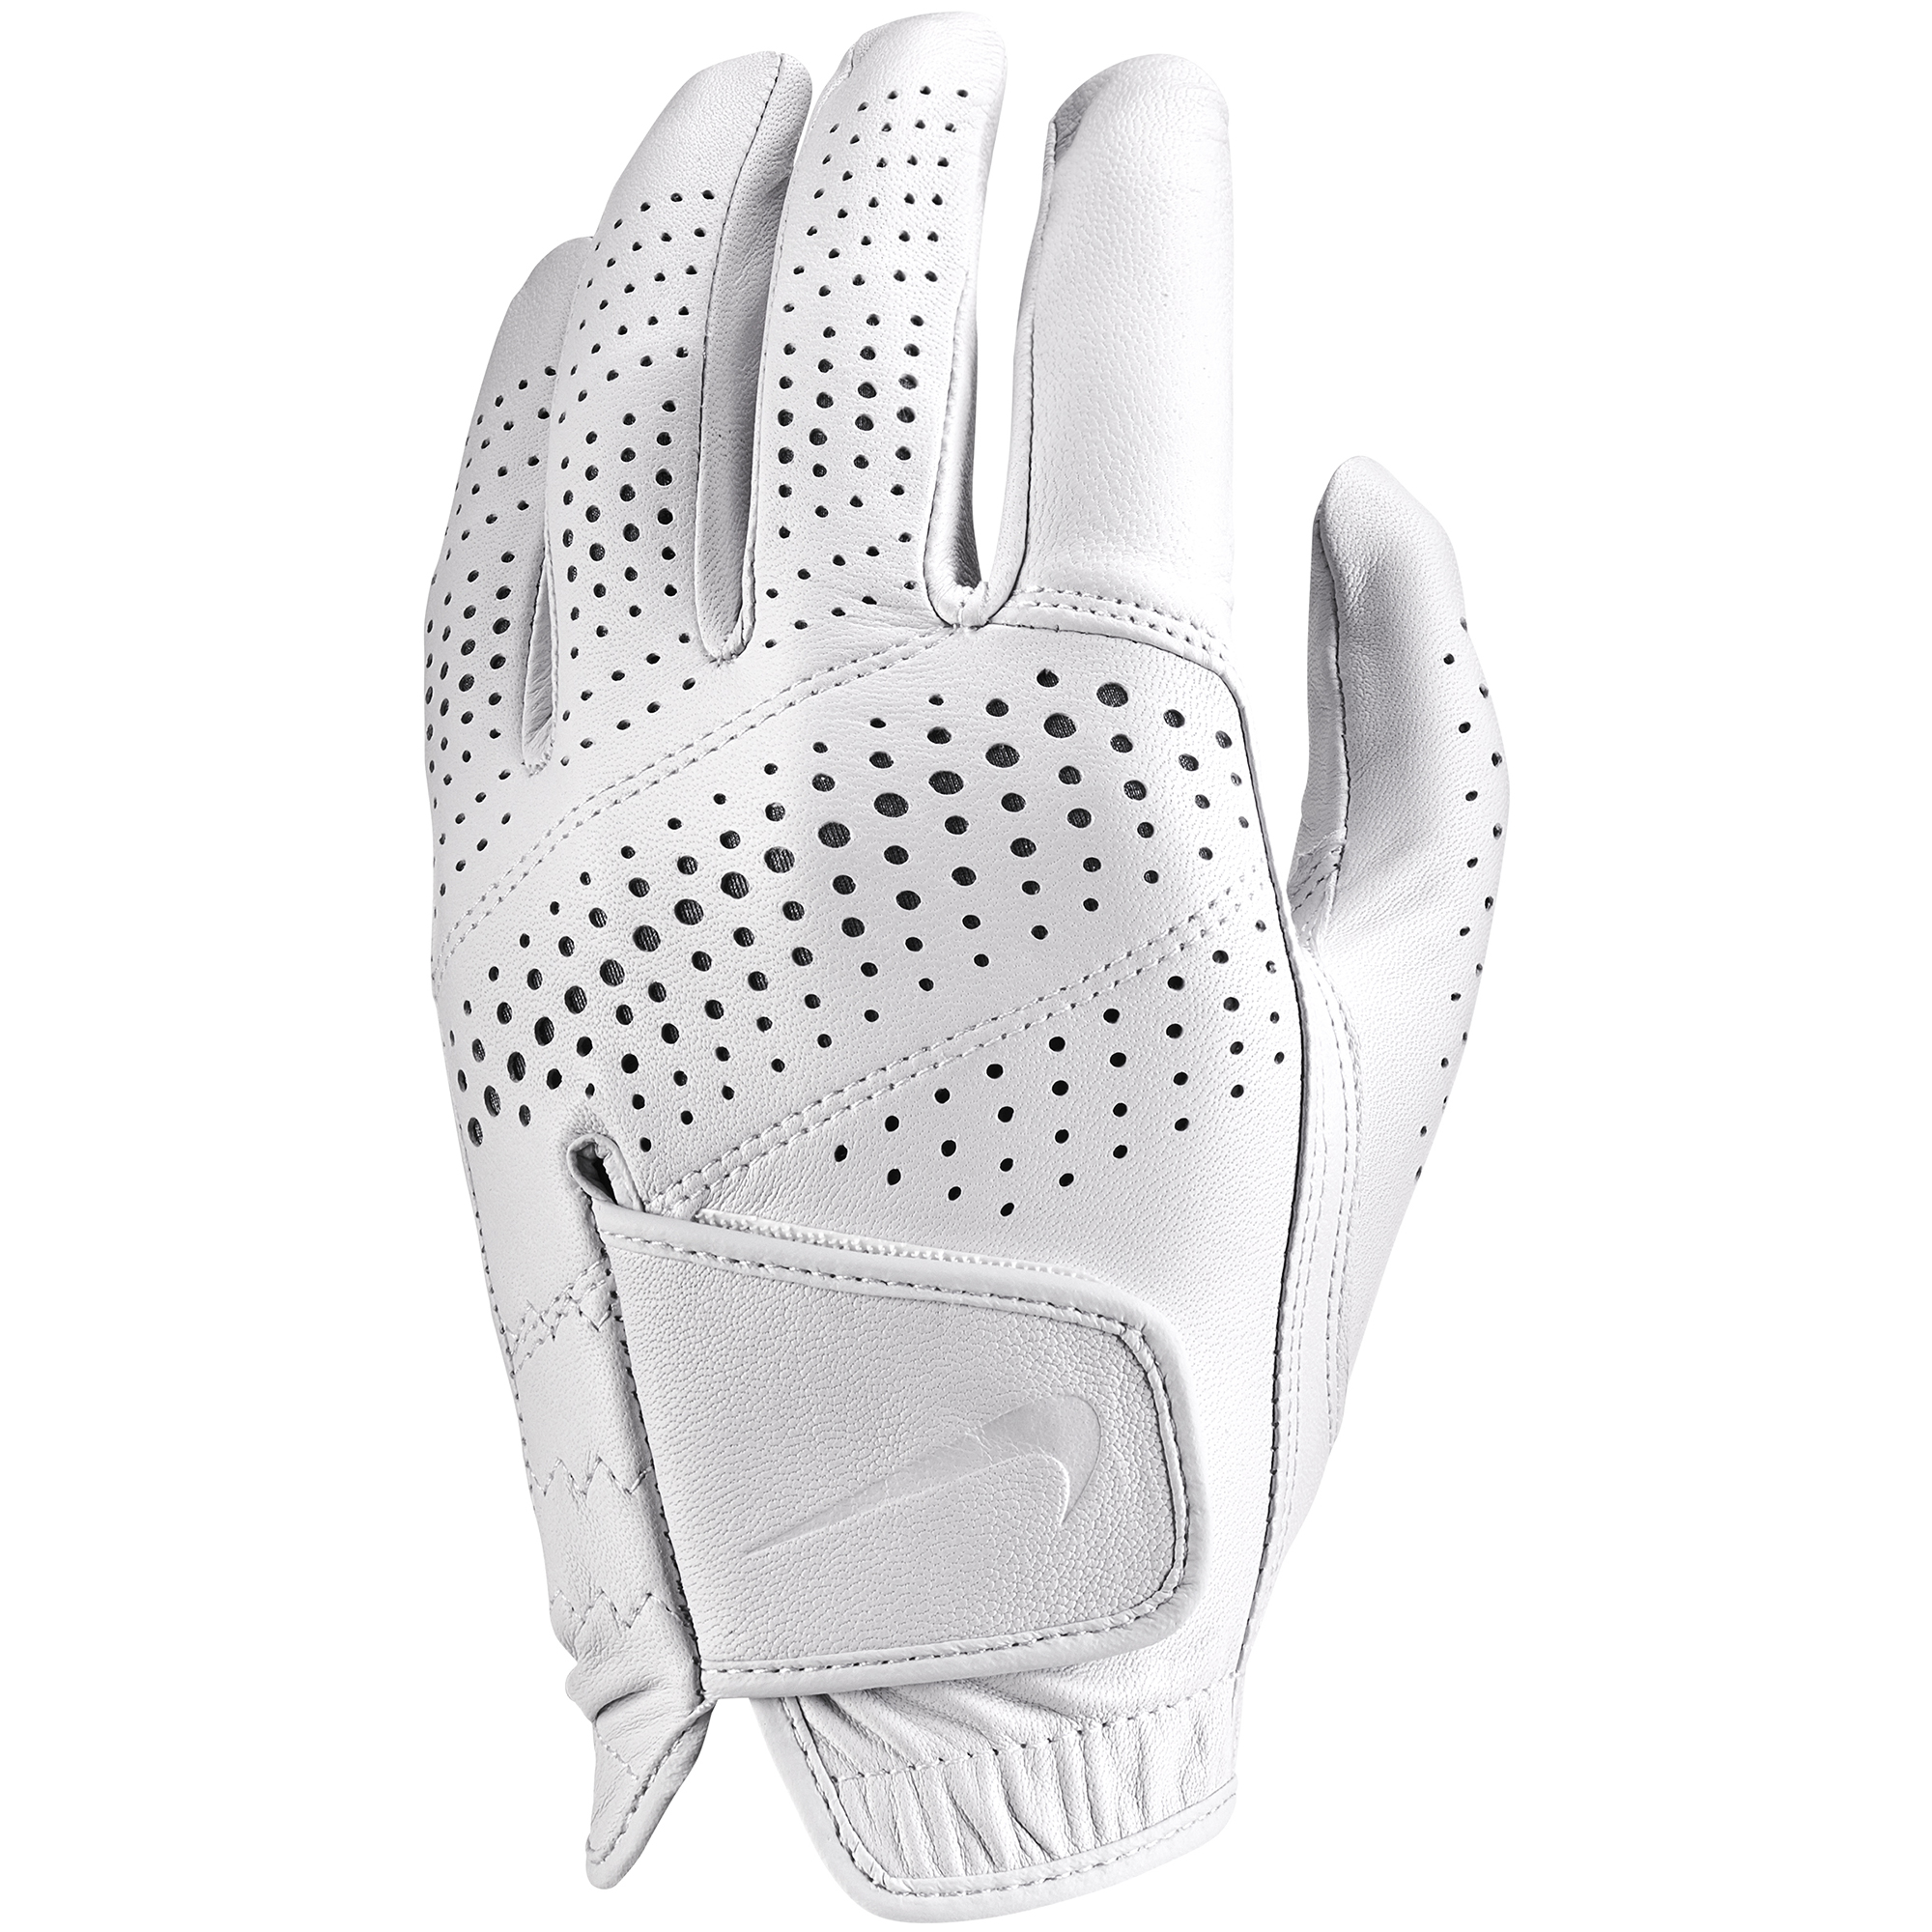 men's half finger golf gloves